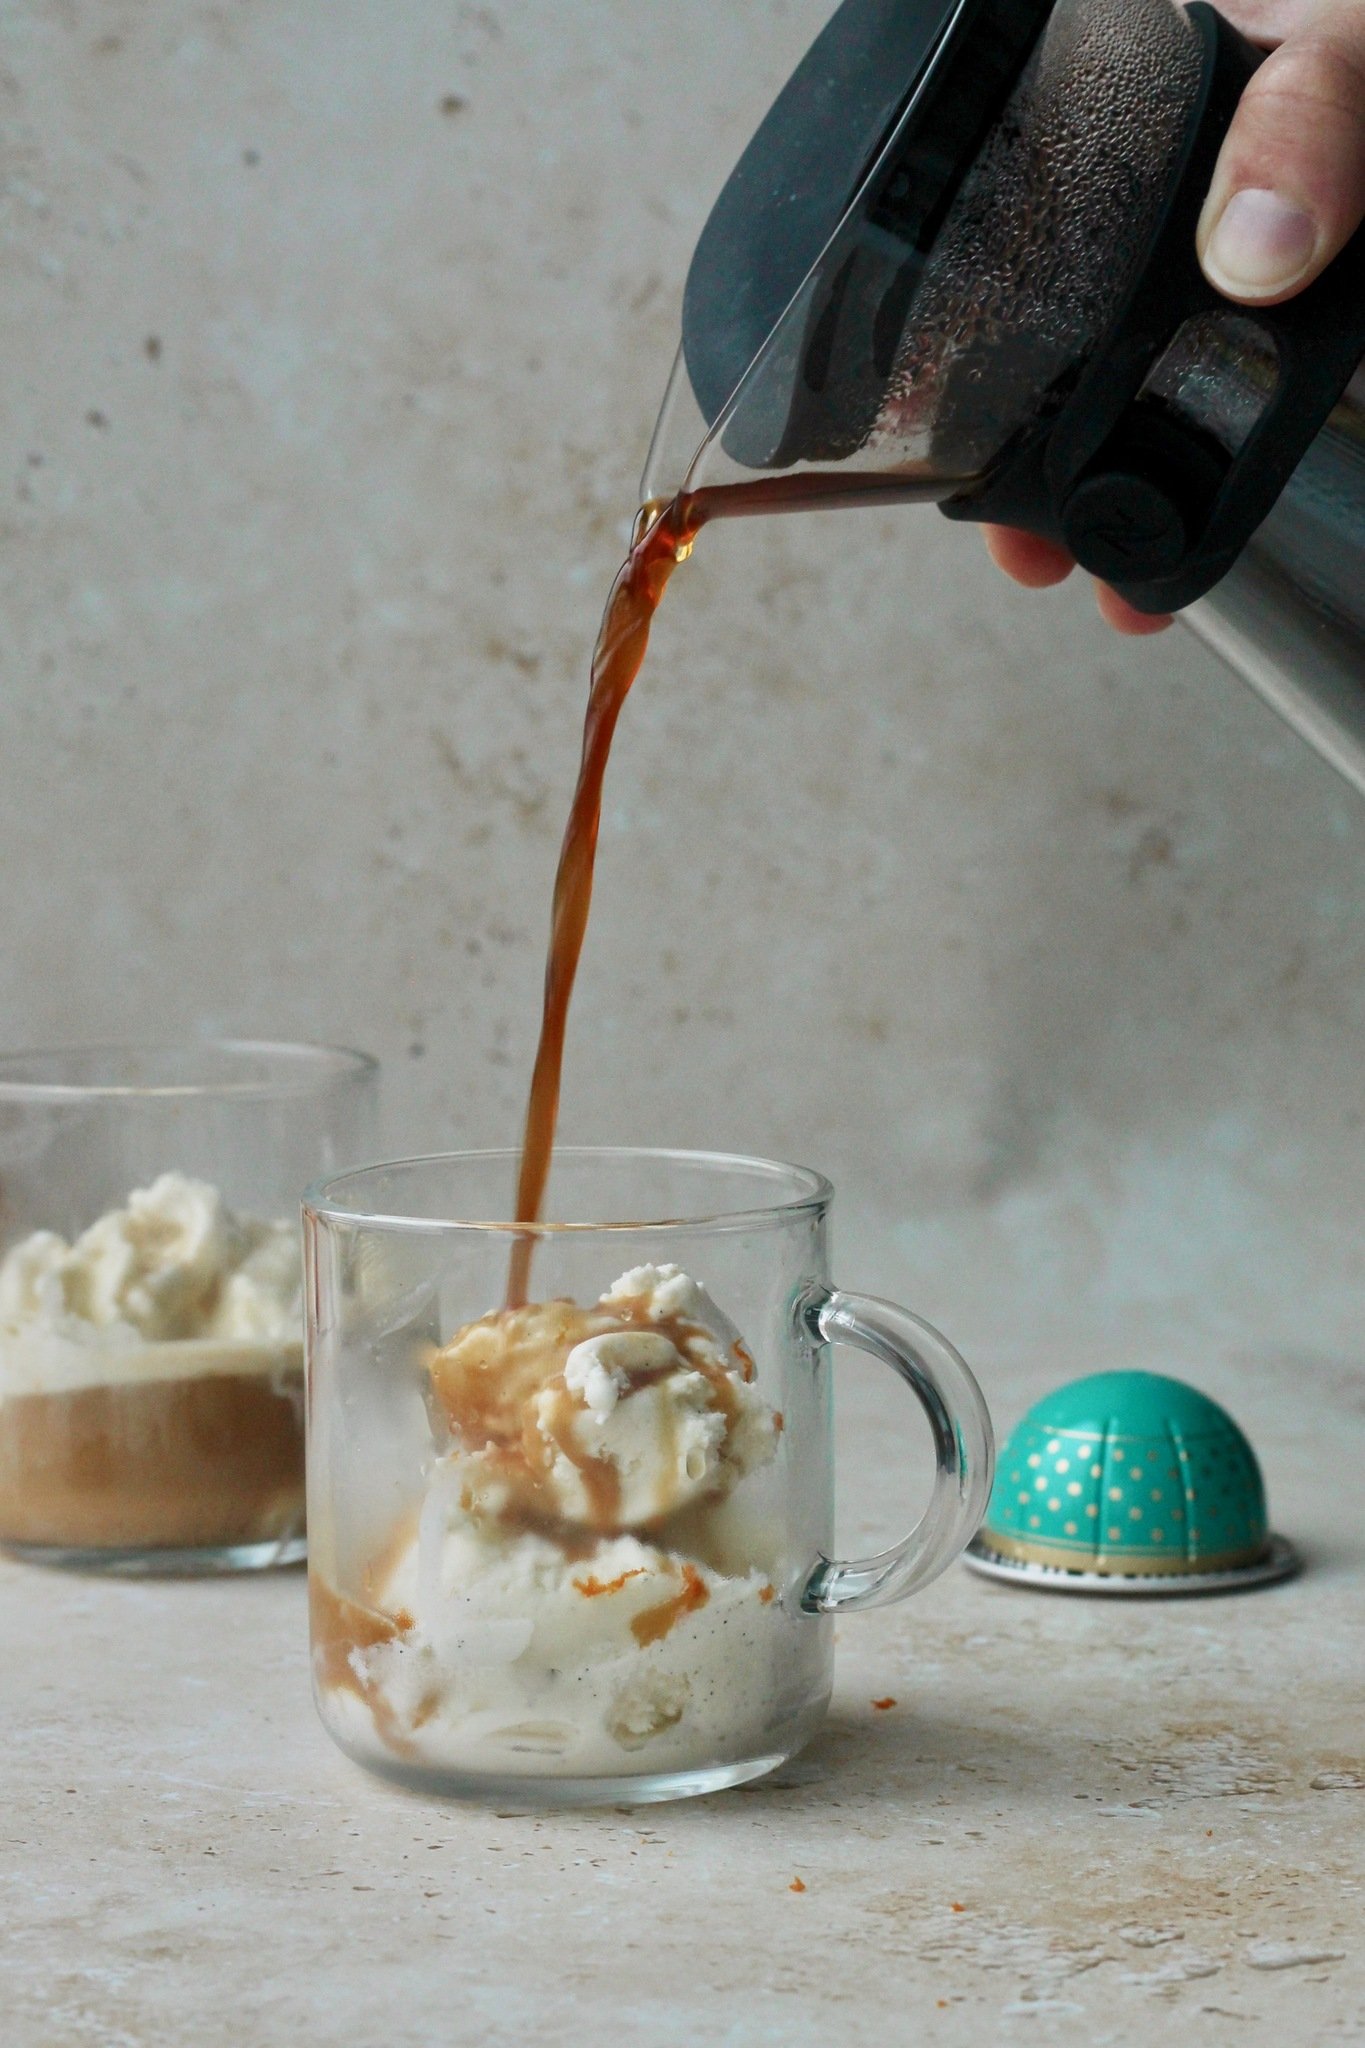 Affogato - nem dessert med is og kaffe